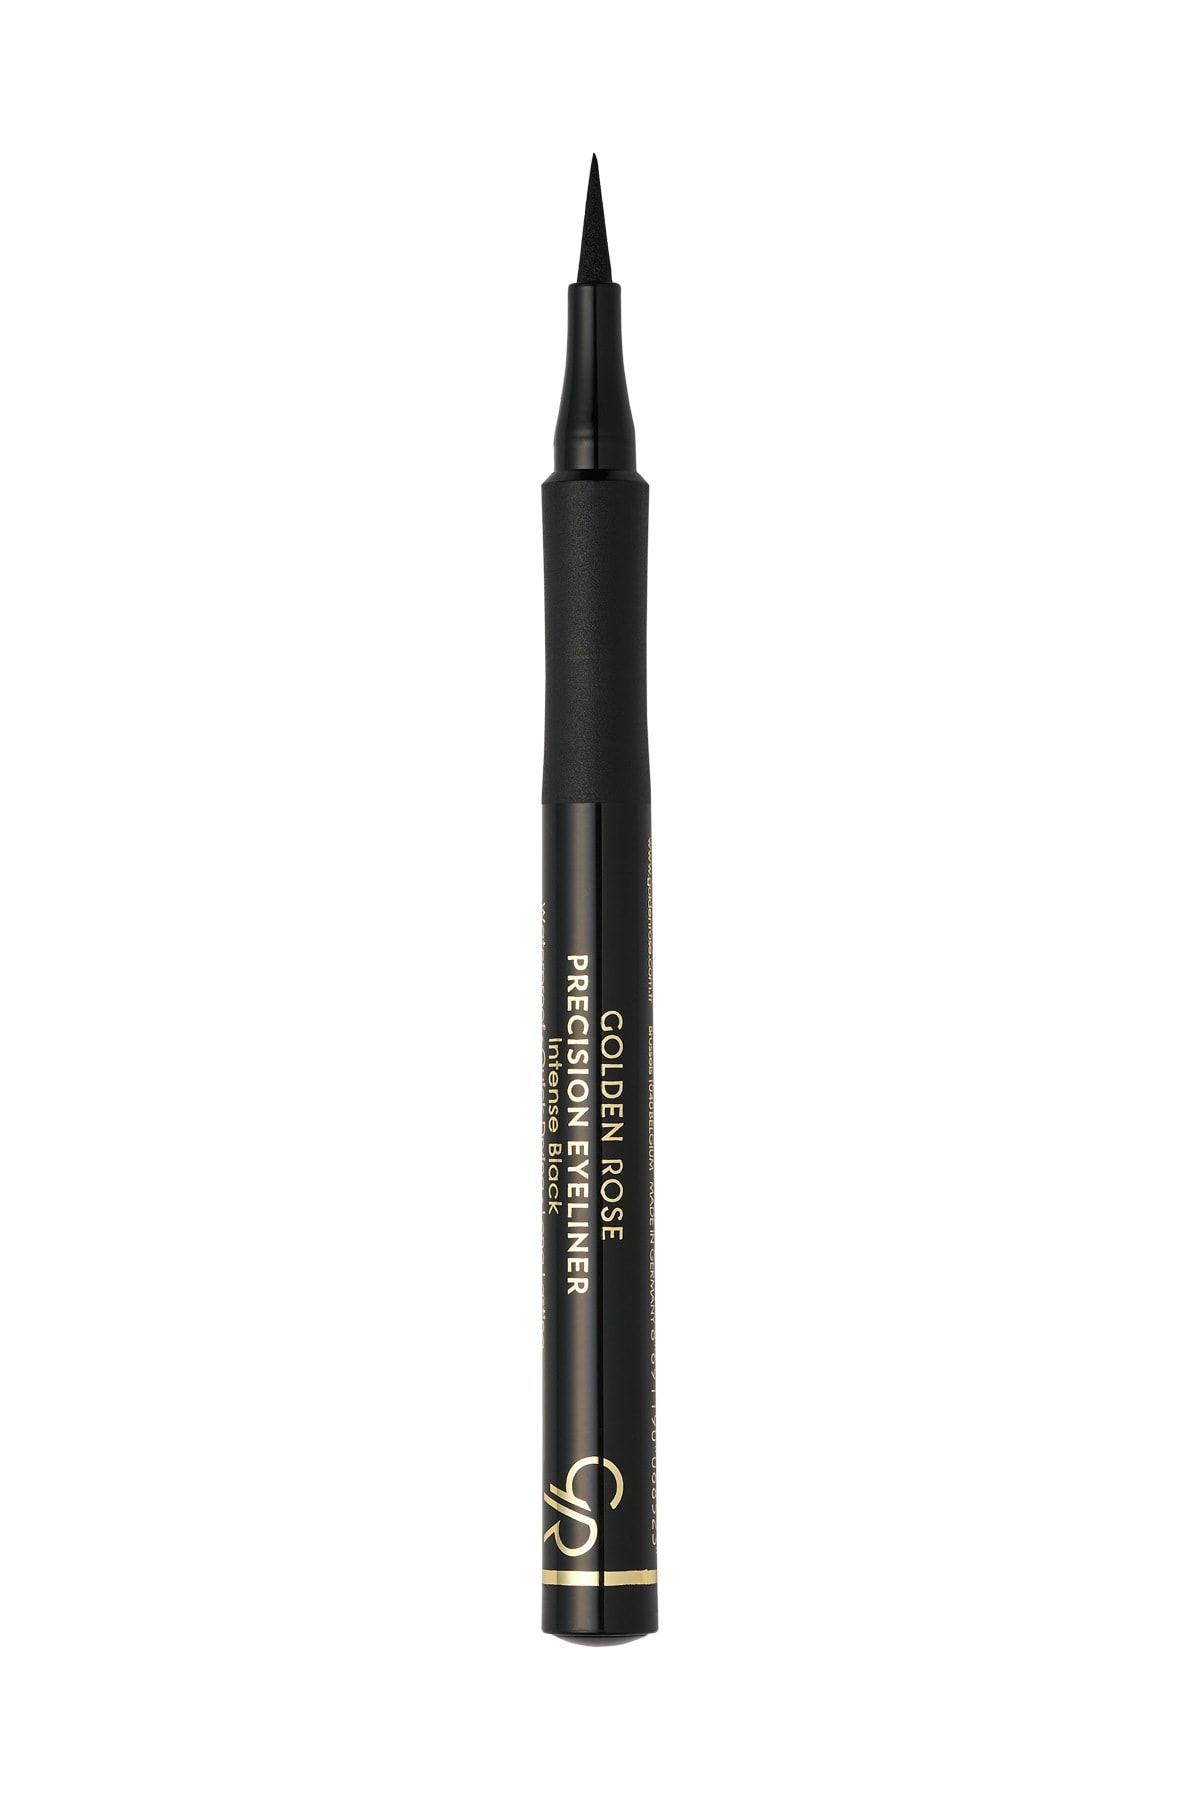 Golden Rose Siyah Eyeliner - Precision Liner 8691190068523